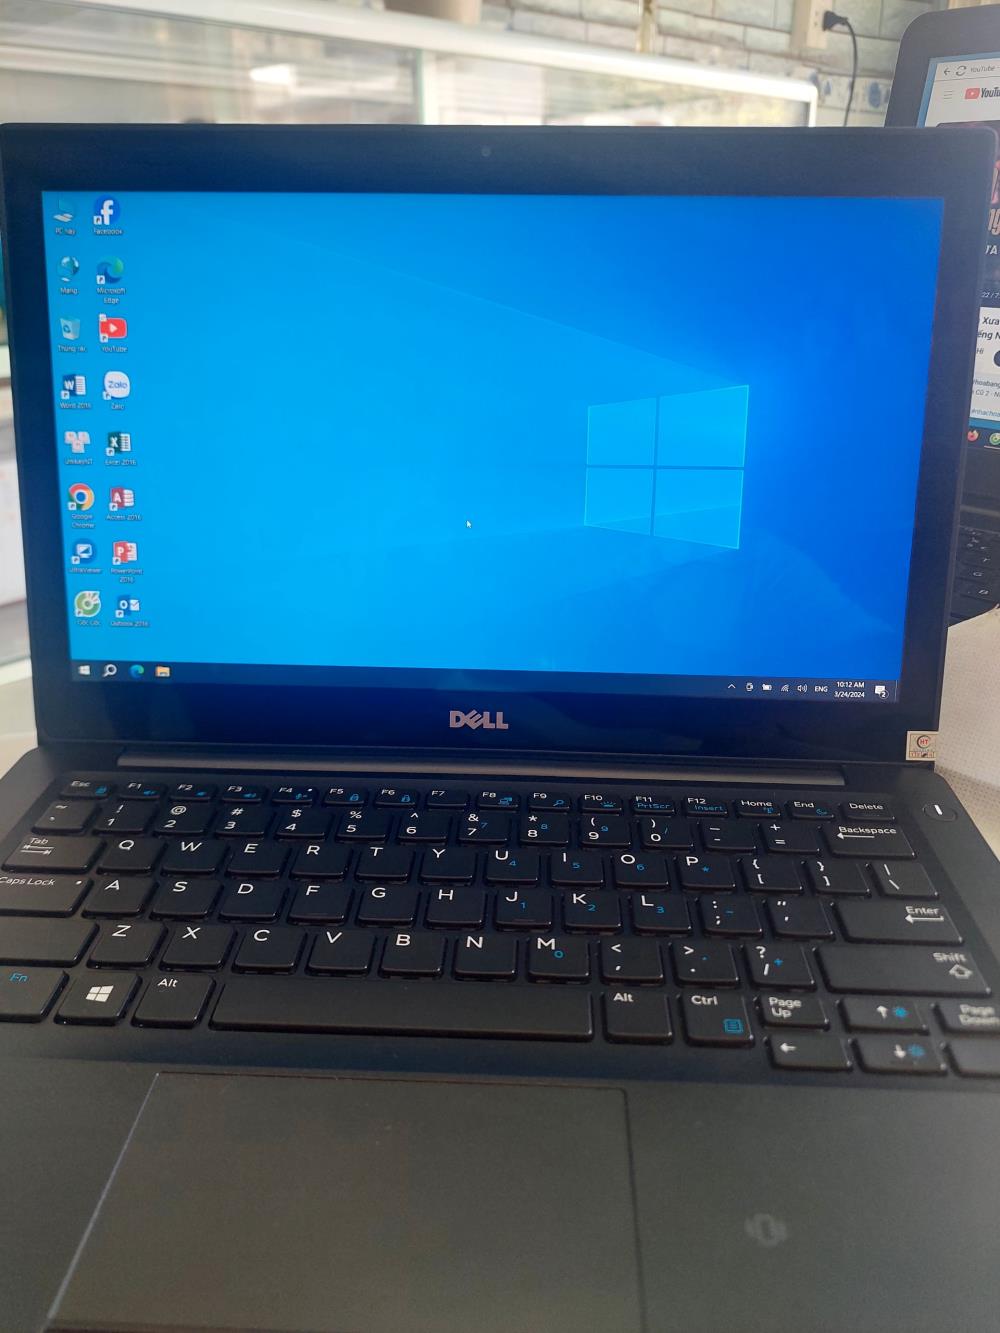 SUPER SALE: Laptop Dell Chính Hãng - Giá Cực Sốc Chỉ Từ 4 Triệu!1434237